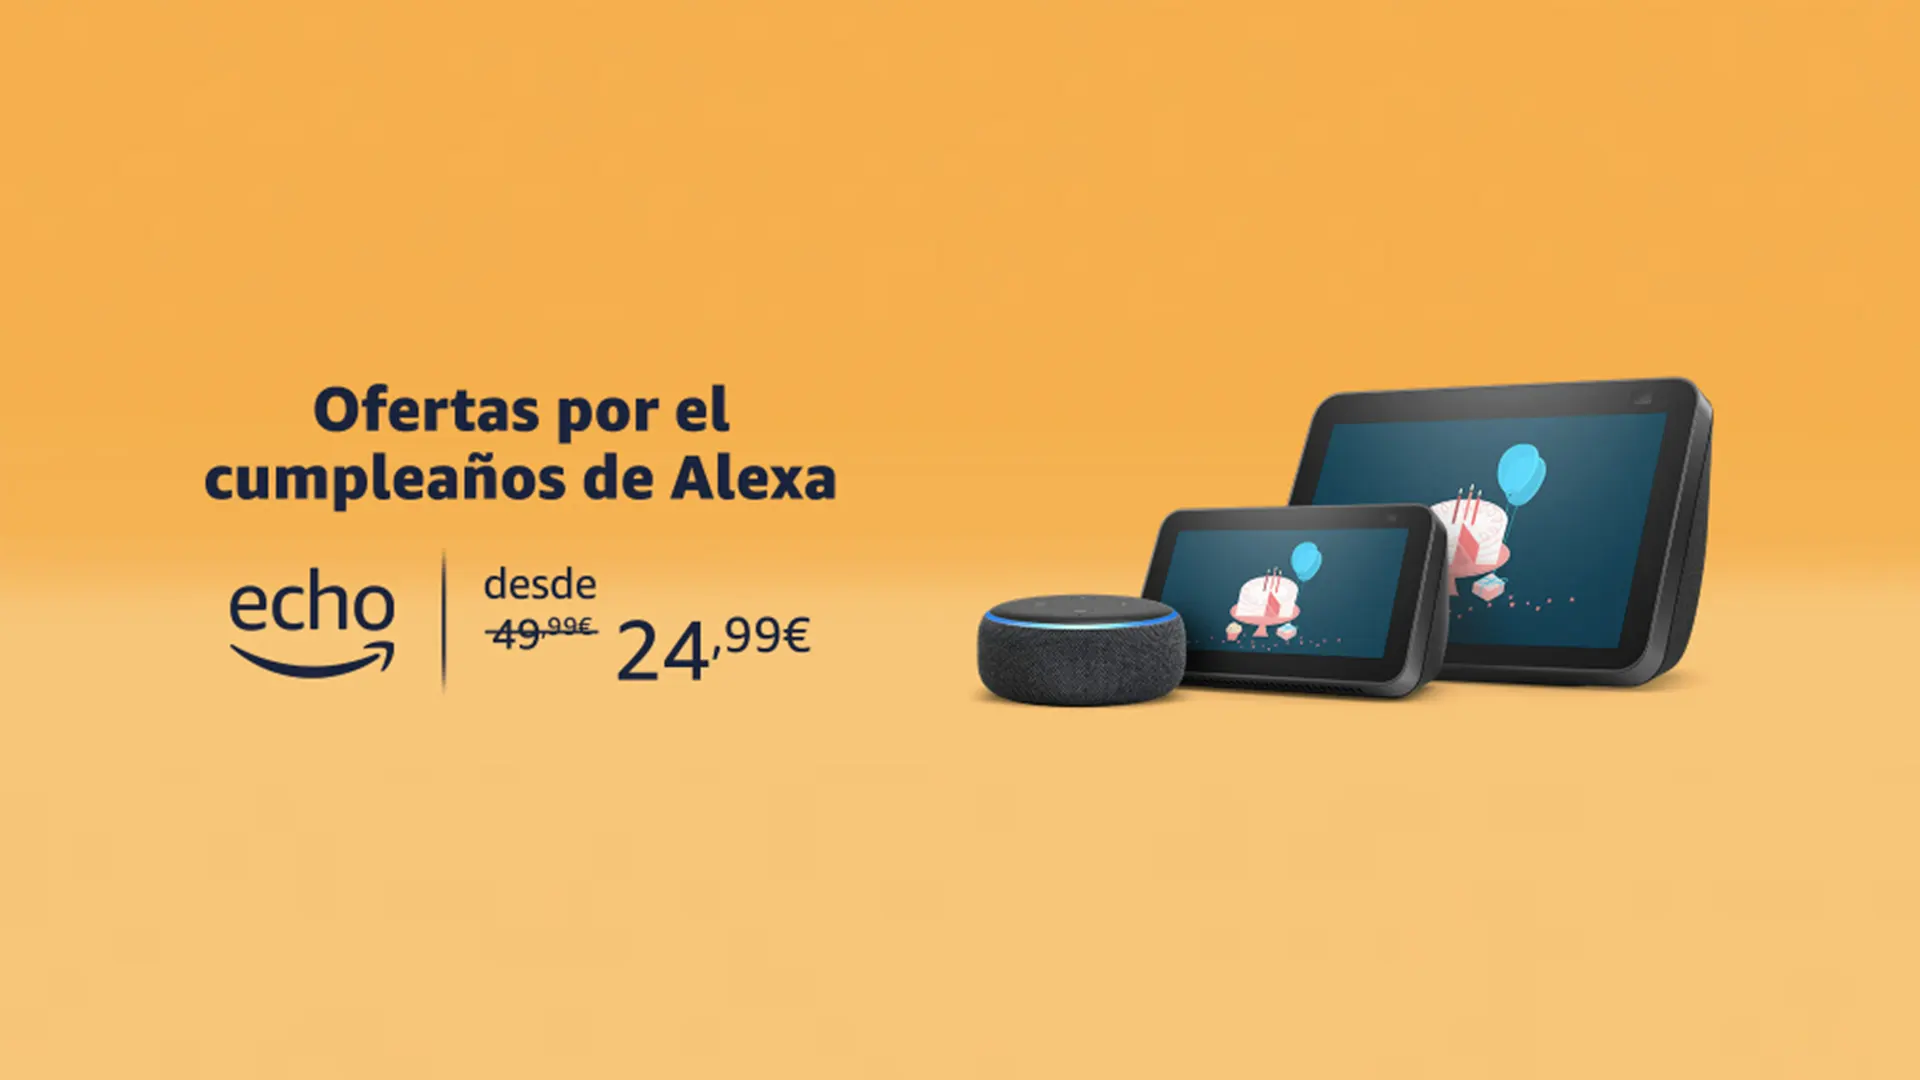 Aún estás a tiempo de conseguir los 20€ de Amazon y aprovechar las ofertas del cumpleaños de Alexa.